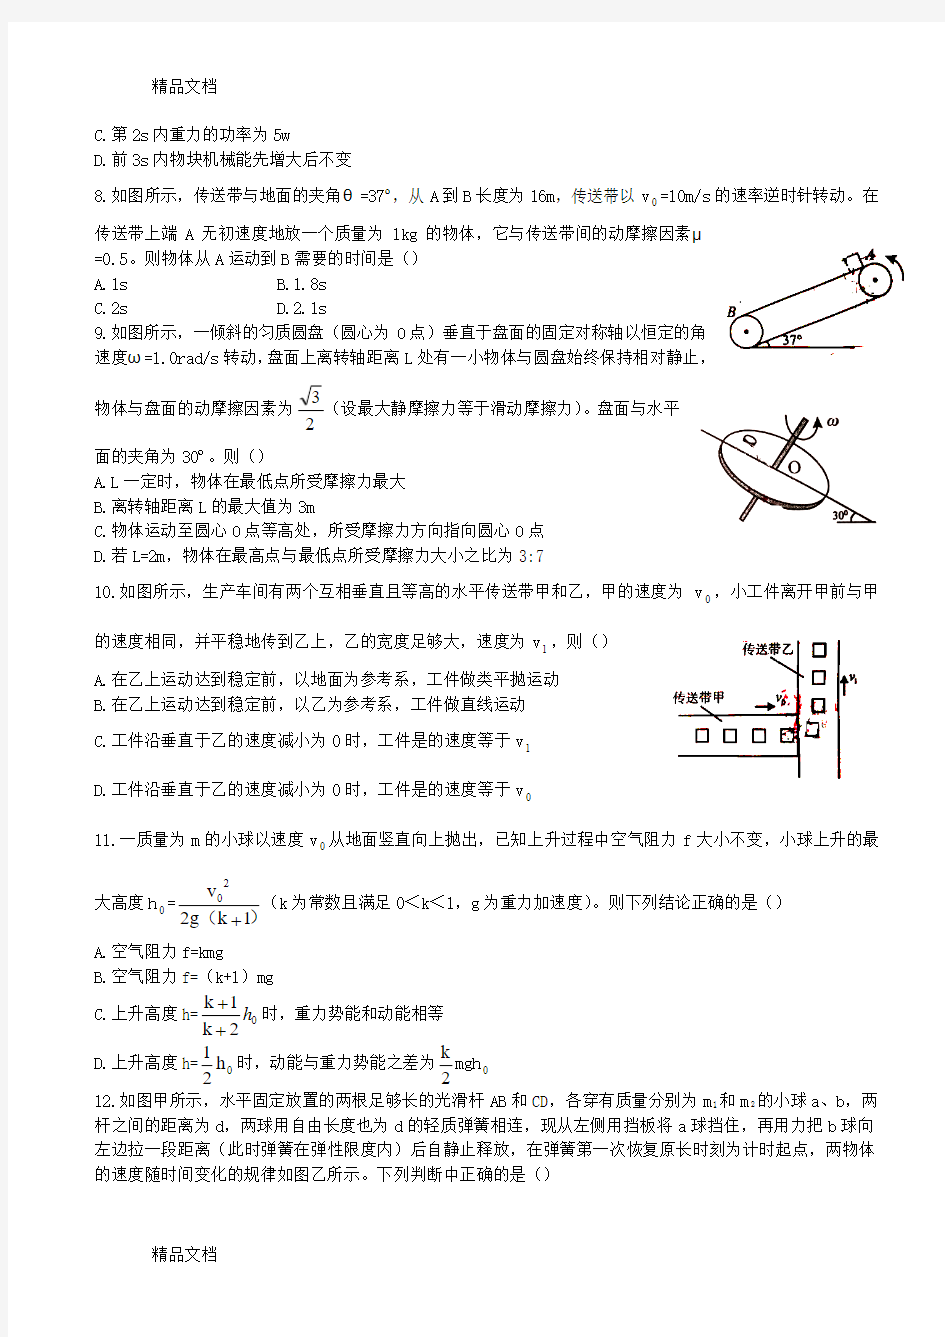 最新浙江省温州市高中物理力学竞赛试卷(含部分答案)资料